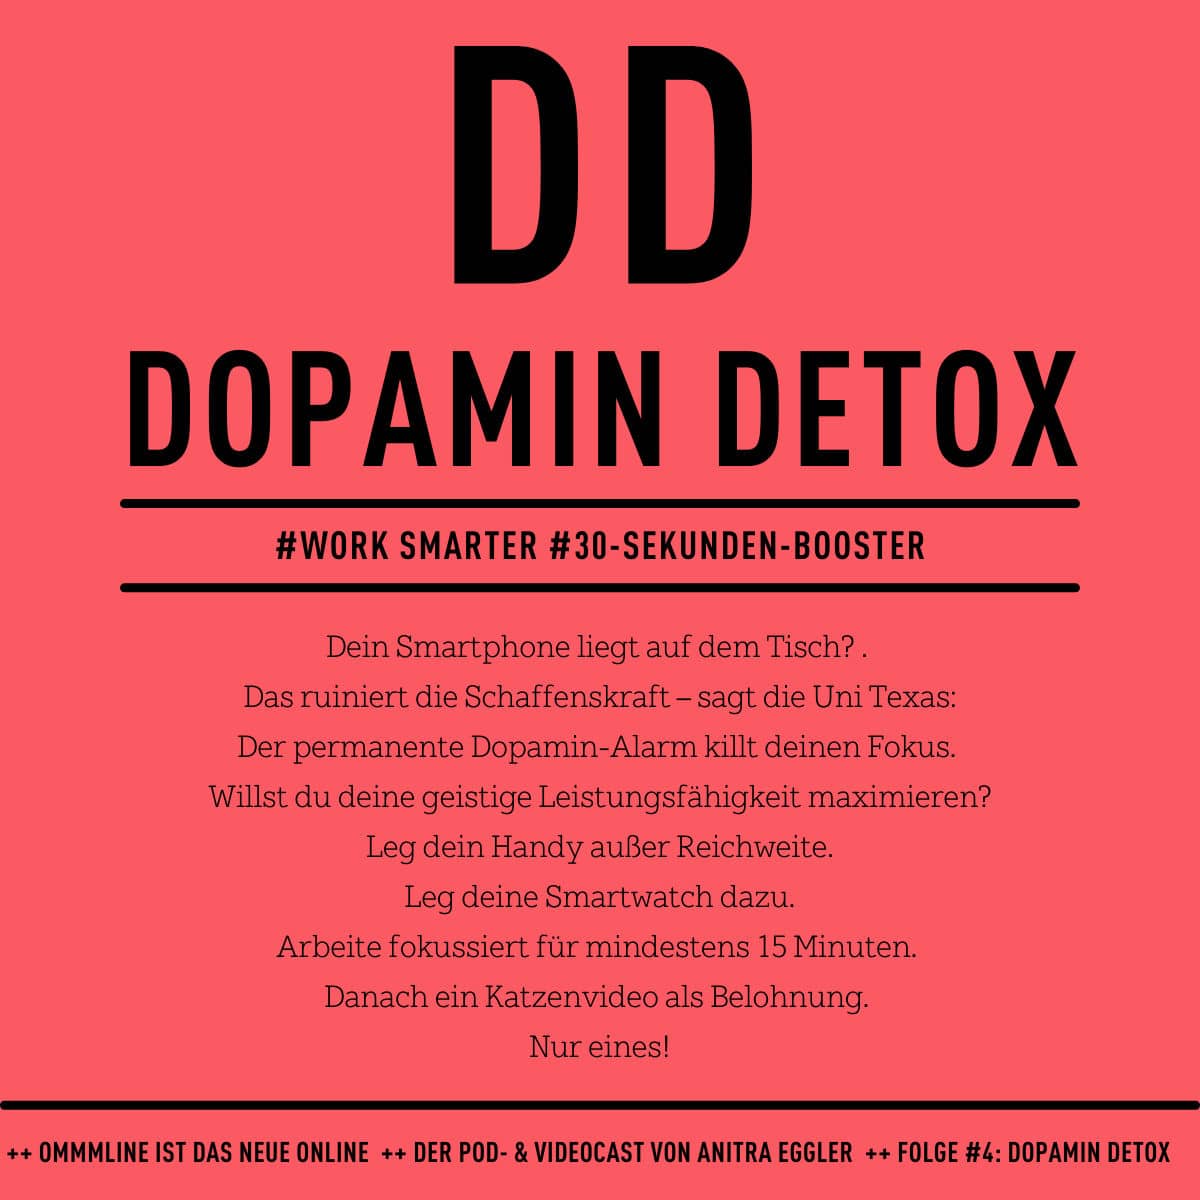 Work-smarter-Tipp Dopamin Detox ©Anitra Eggler